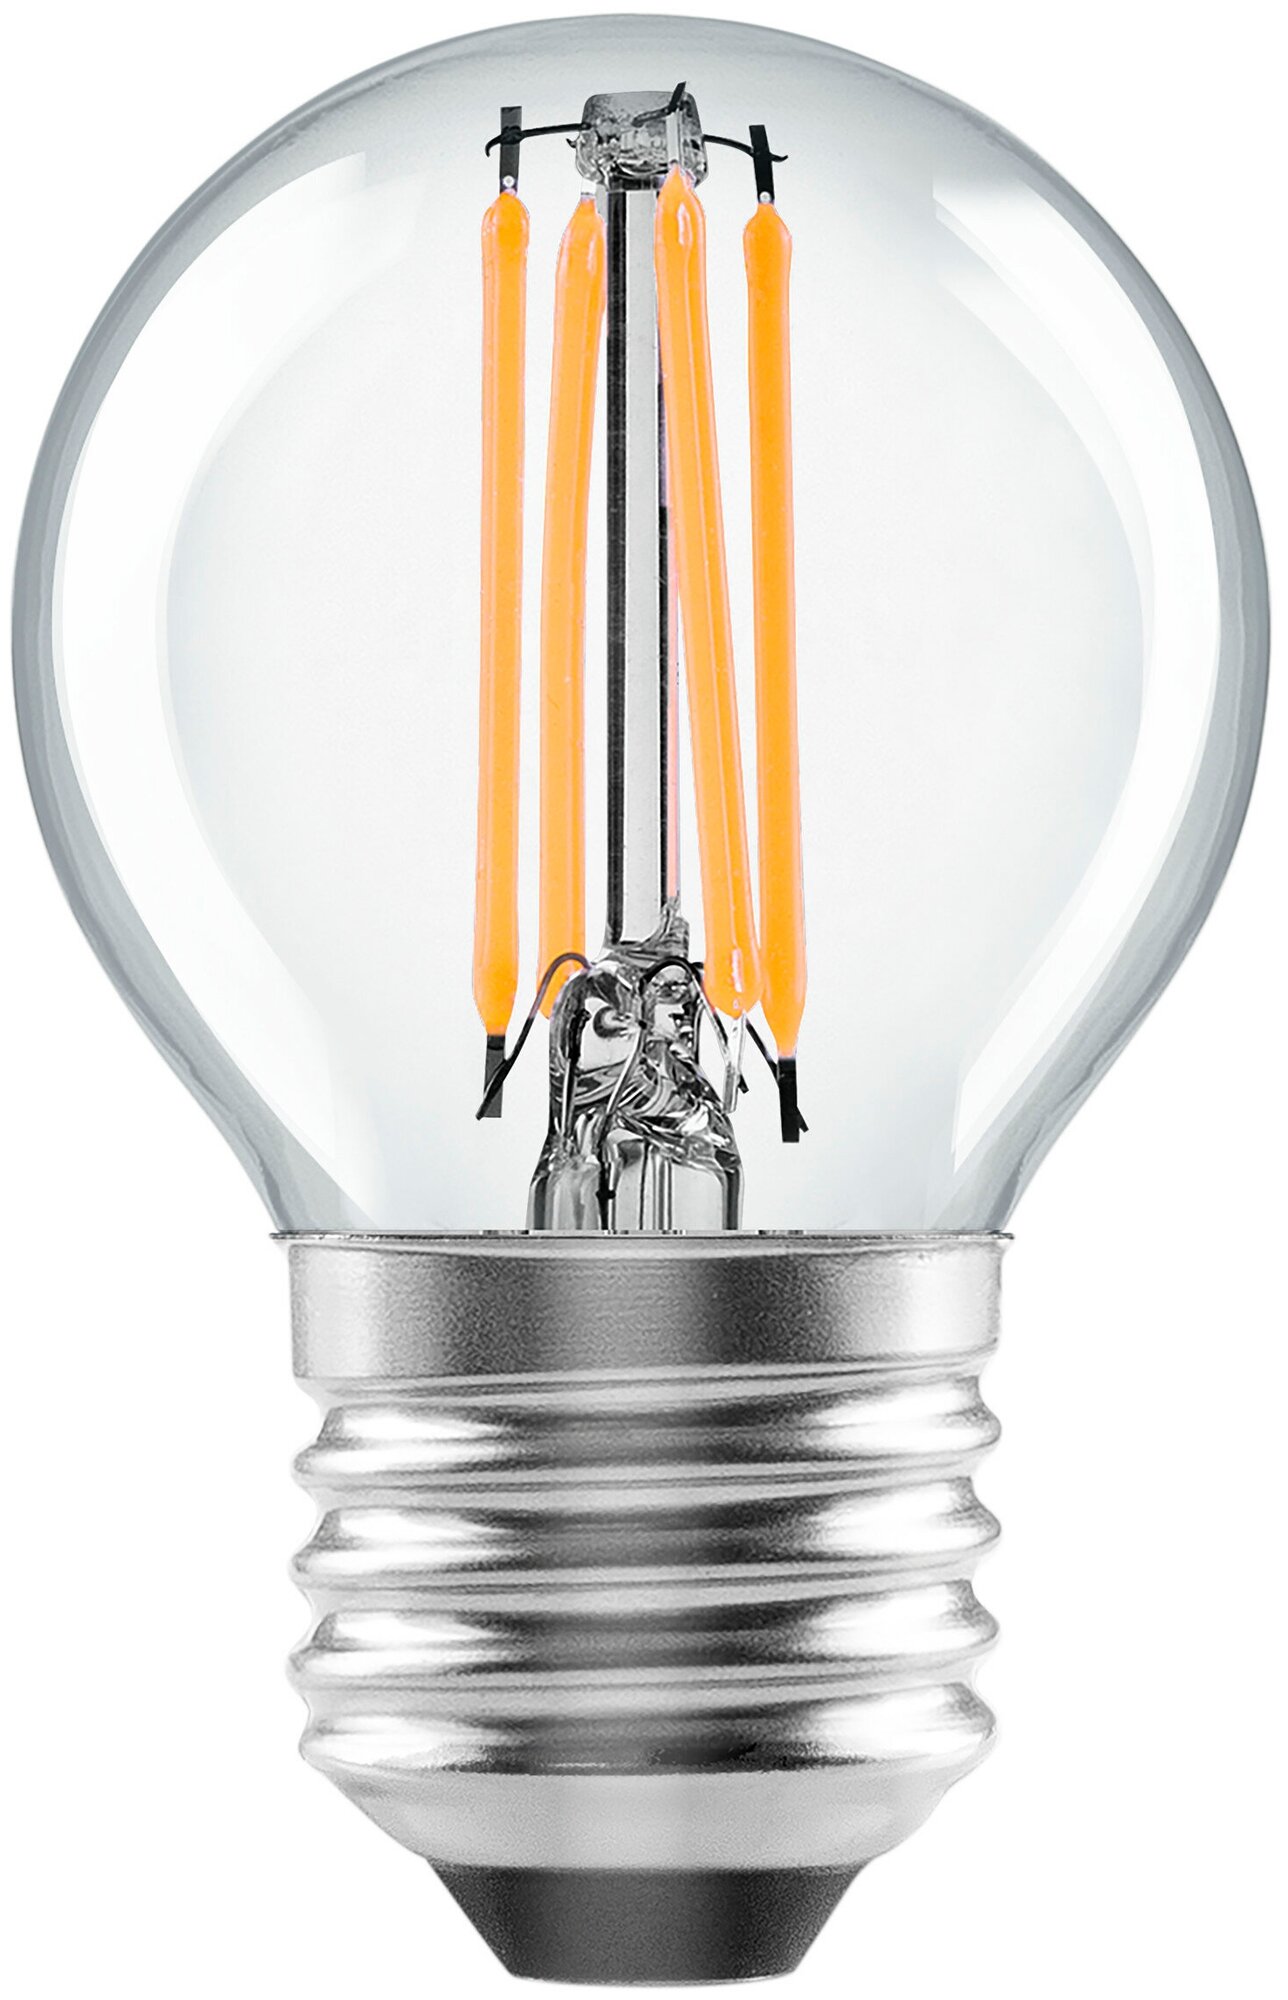 Лампа светодиодная Lexman E27 220-240 В 6 Вт шар прозрачная 750 лм теплый белый свет - фотография № 1